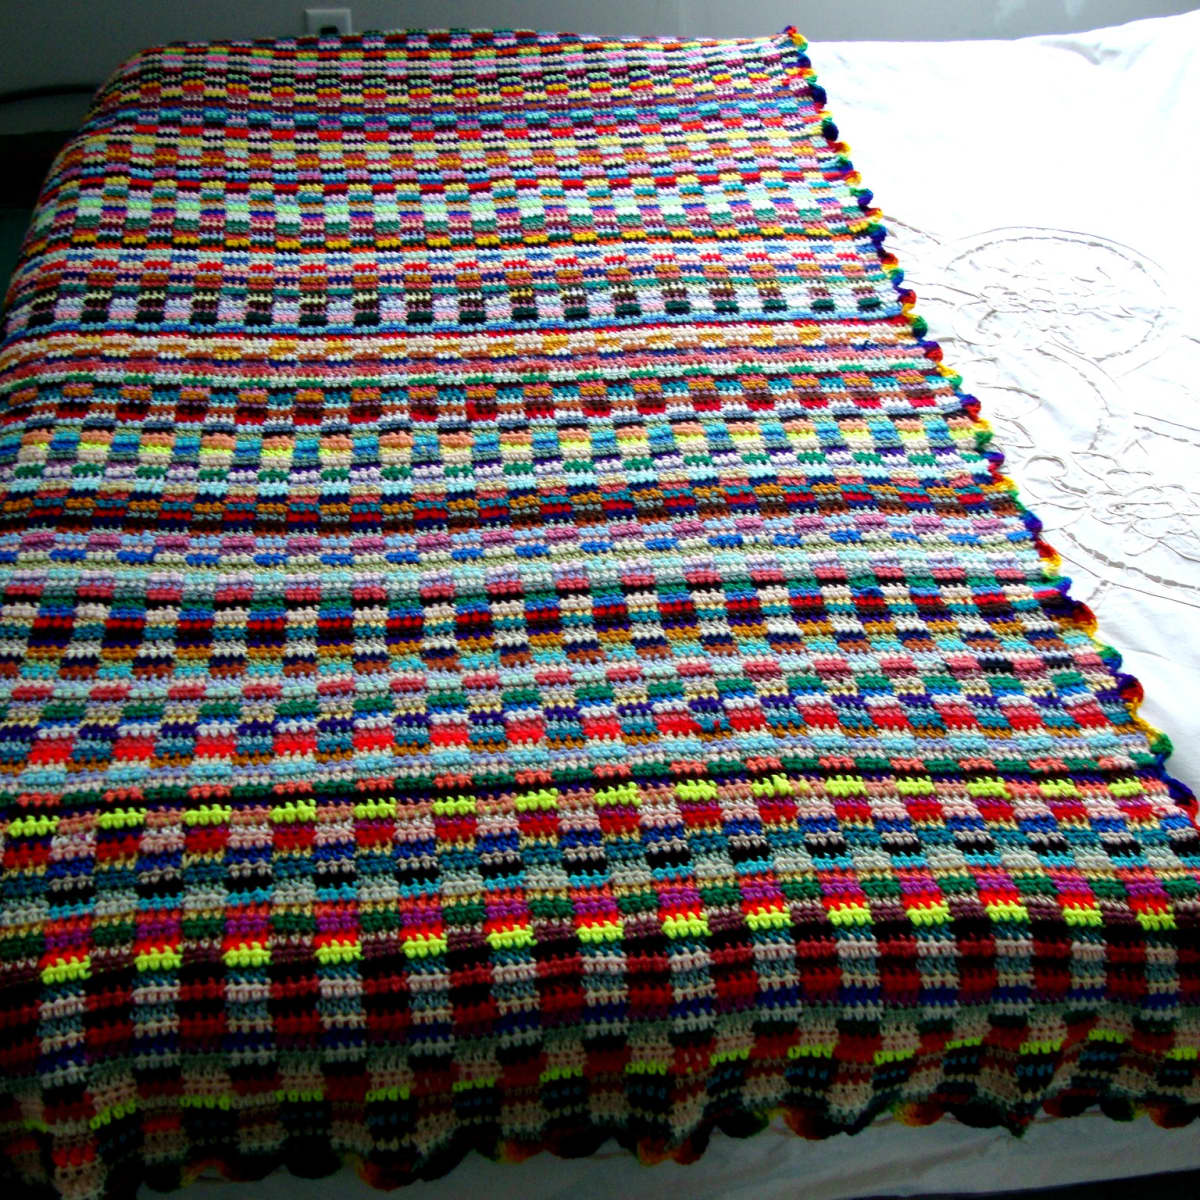 Scrap Yarn Crochet Blanket FREE Pattern - Not So Scrappy Scrap Yarn Blanket